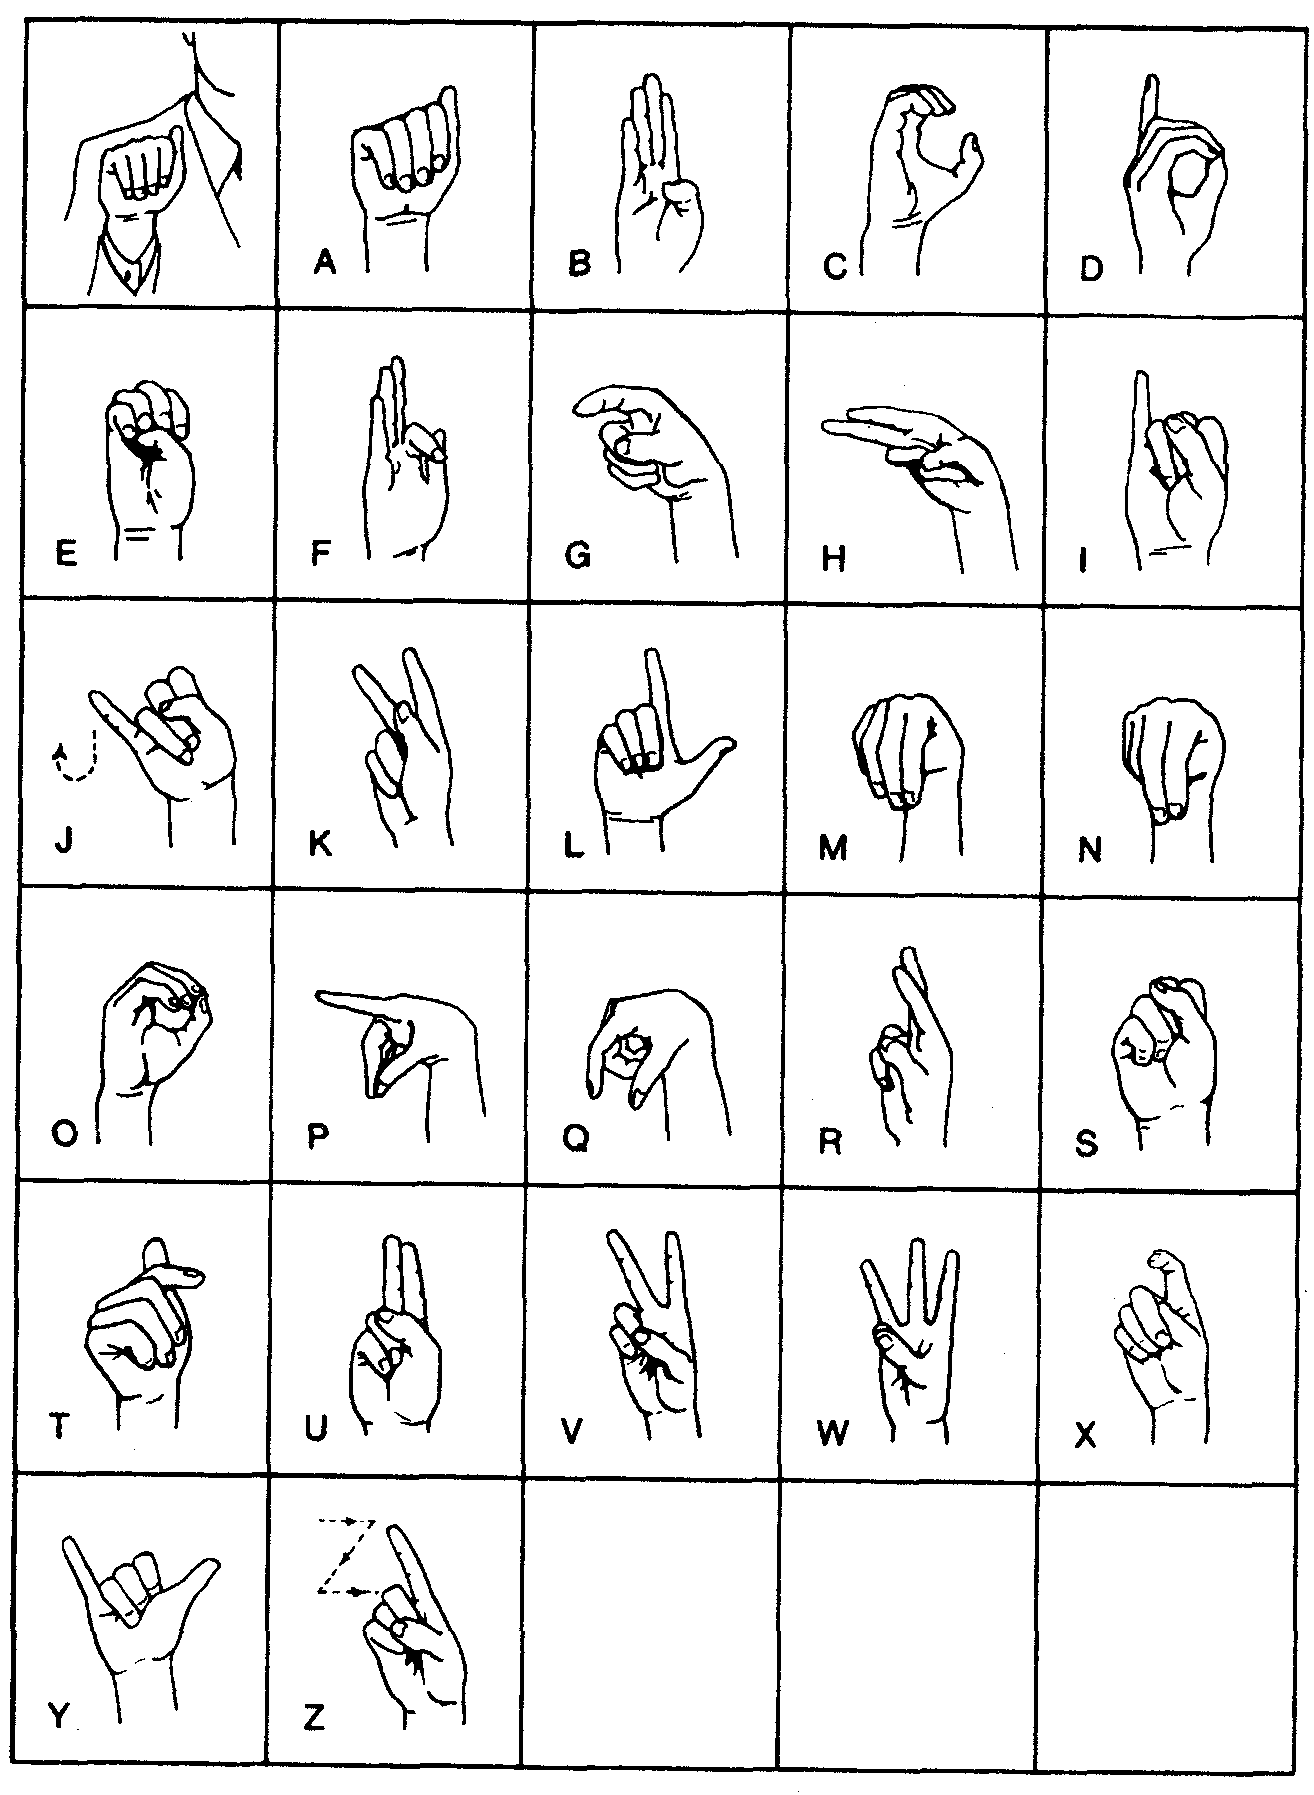 Язык для слабослышащих. Язык жестов глухонемых алфавит. Международный дактильный алфавит. Дактиль язык жестов алфавит. Язык руками для глухонемых.